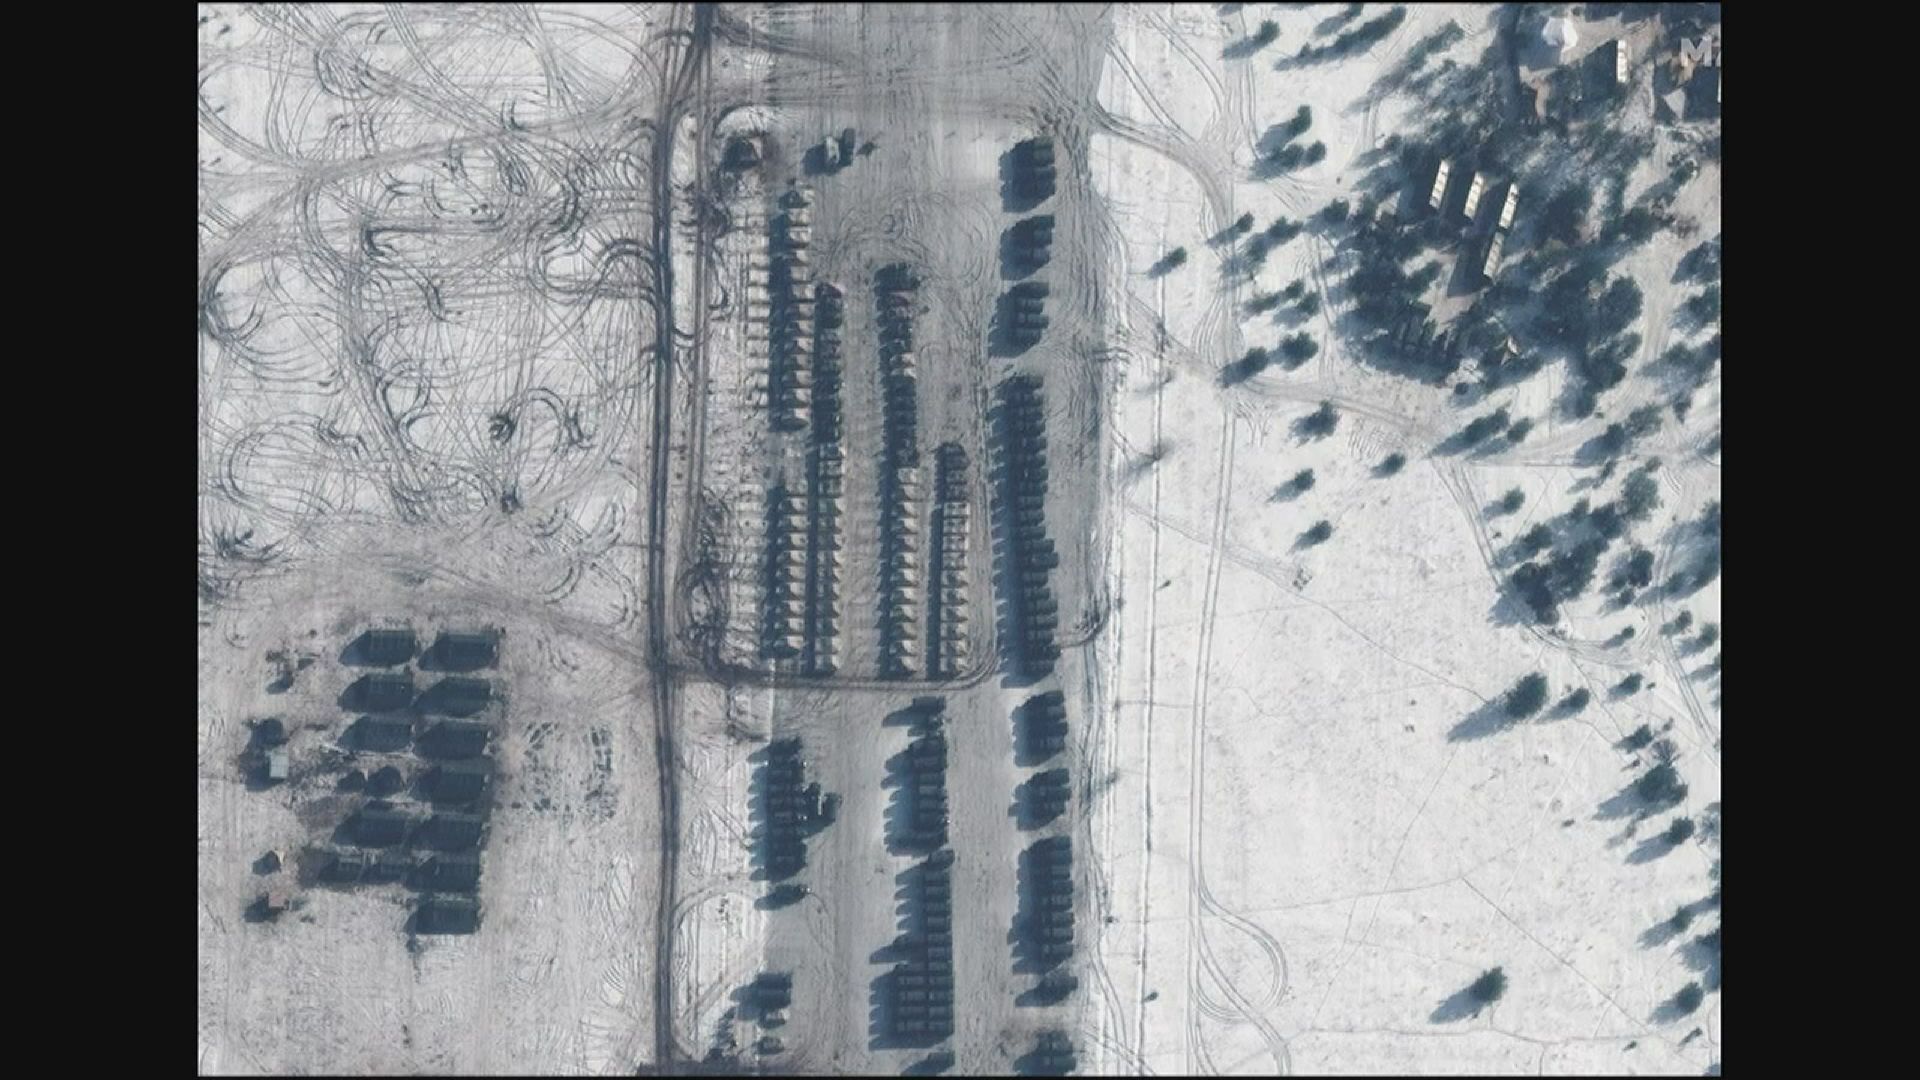 衛星圖片指俄軍再有增派部隊抵烏克蘭周邊　美國國務卿指俄隨時入侵烏克蘭